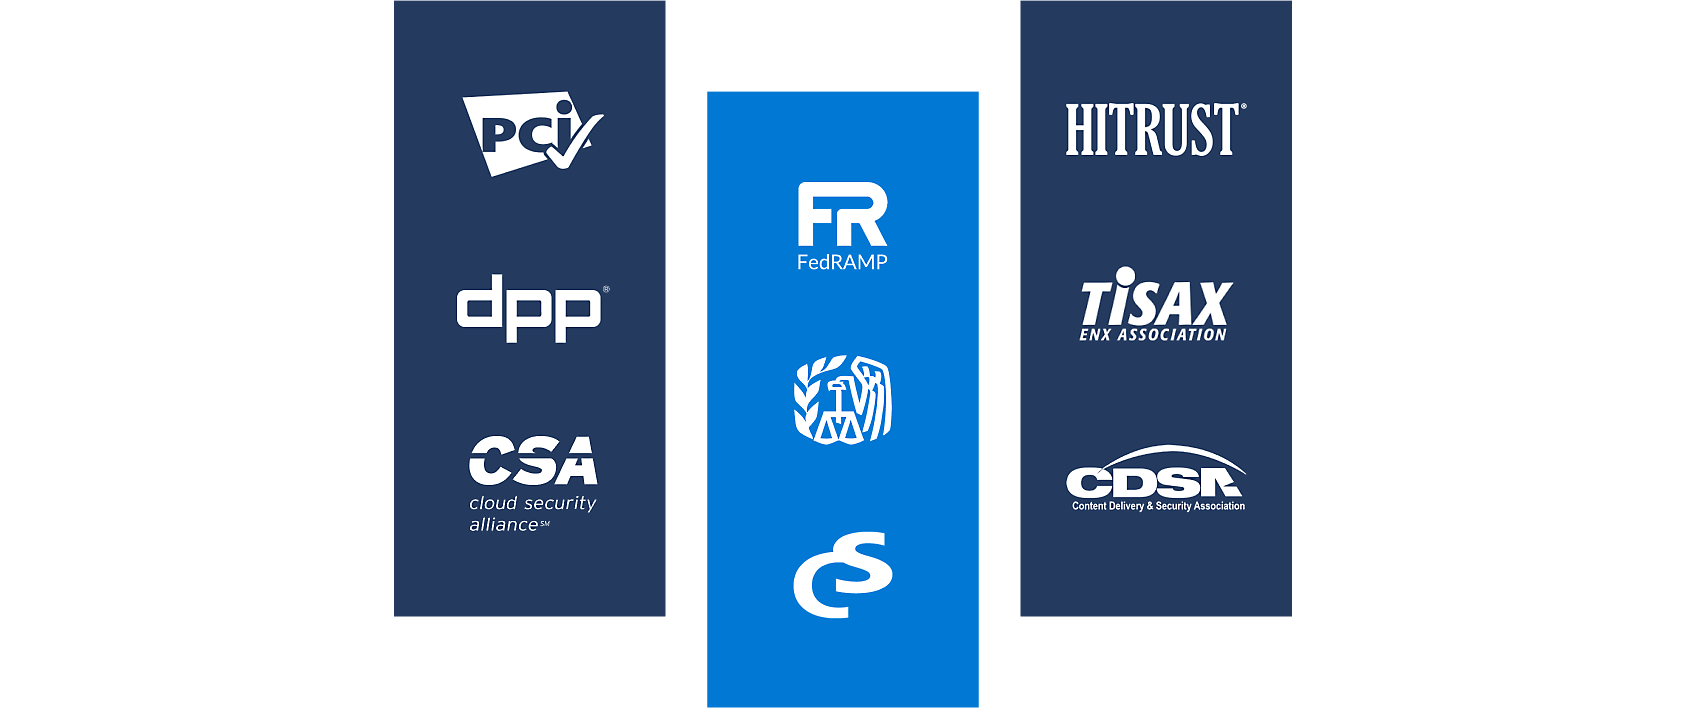 Logo's van PCI, Cloud Security Alliance, FedRAMP, HITRUST en meer